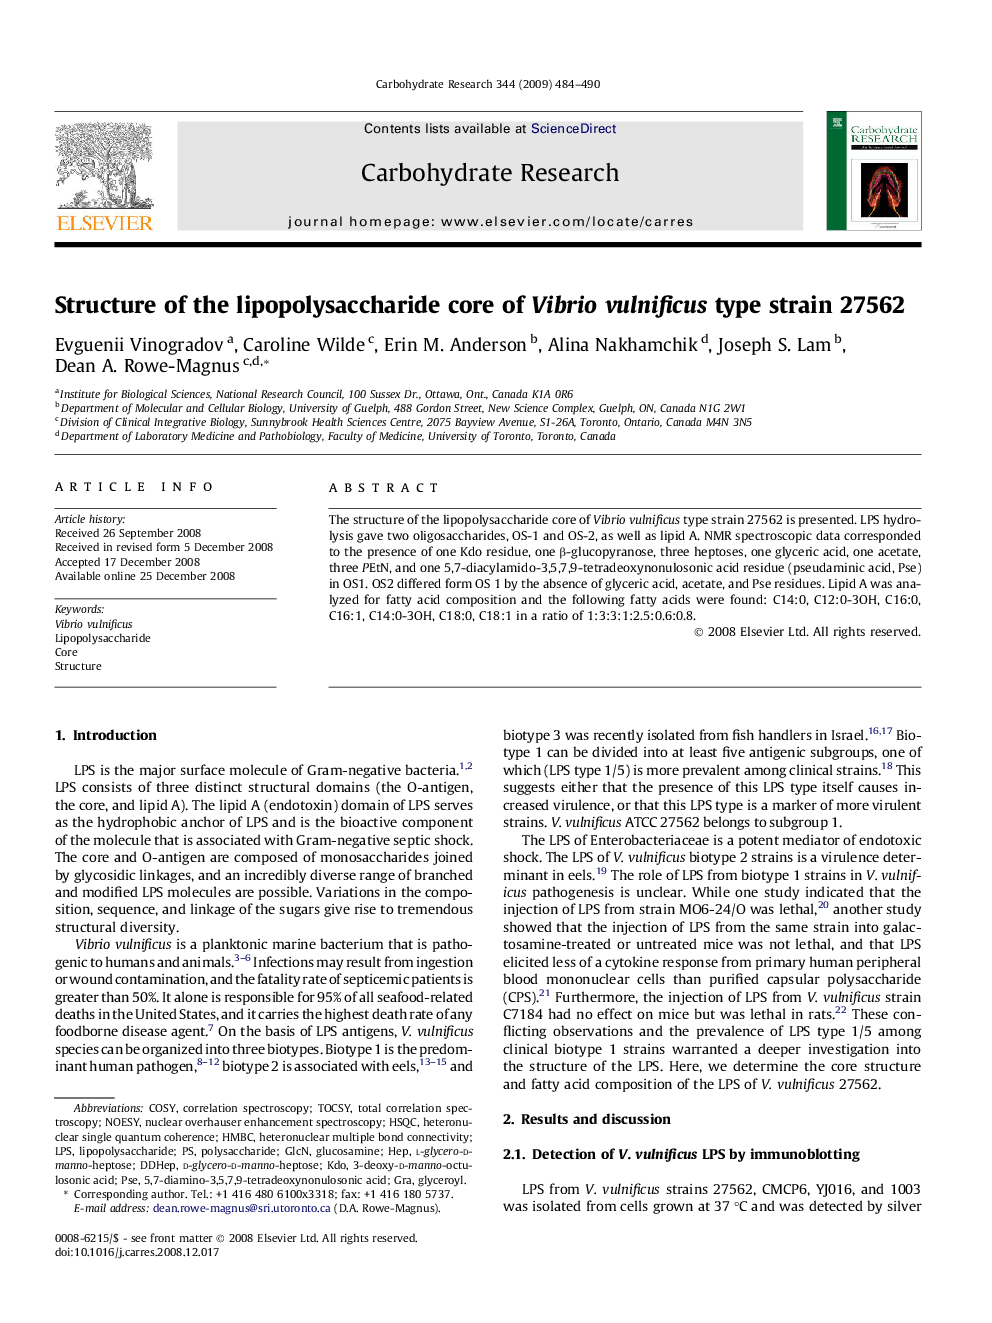 Structure of the lipopolysaccharide core of Vibrio vulnificus type strain 27562